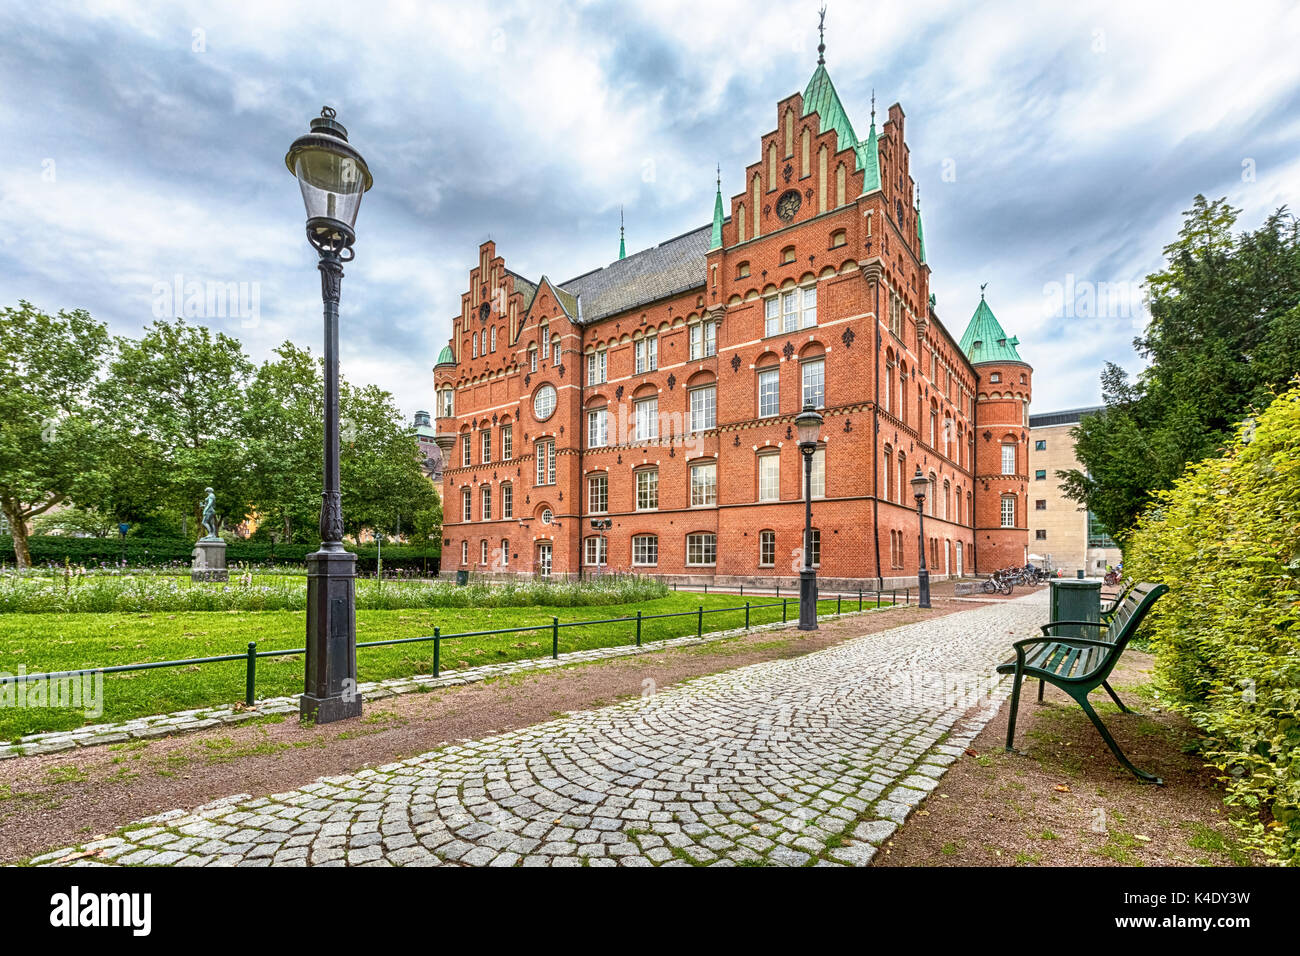 El edificio de la biblioteca de la ciudad de Malmö, Suecia hechas de ladrillo rojo de estilo arquitectónico renacentista Foto de stock